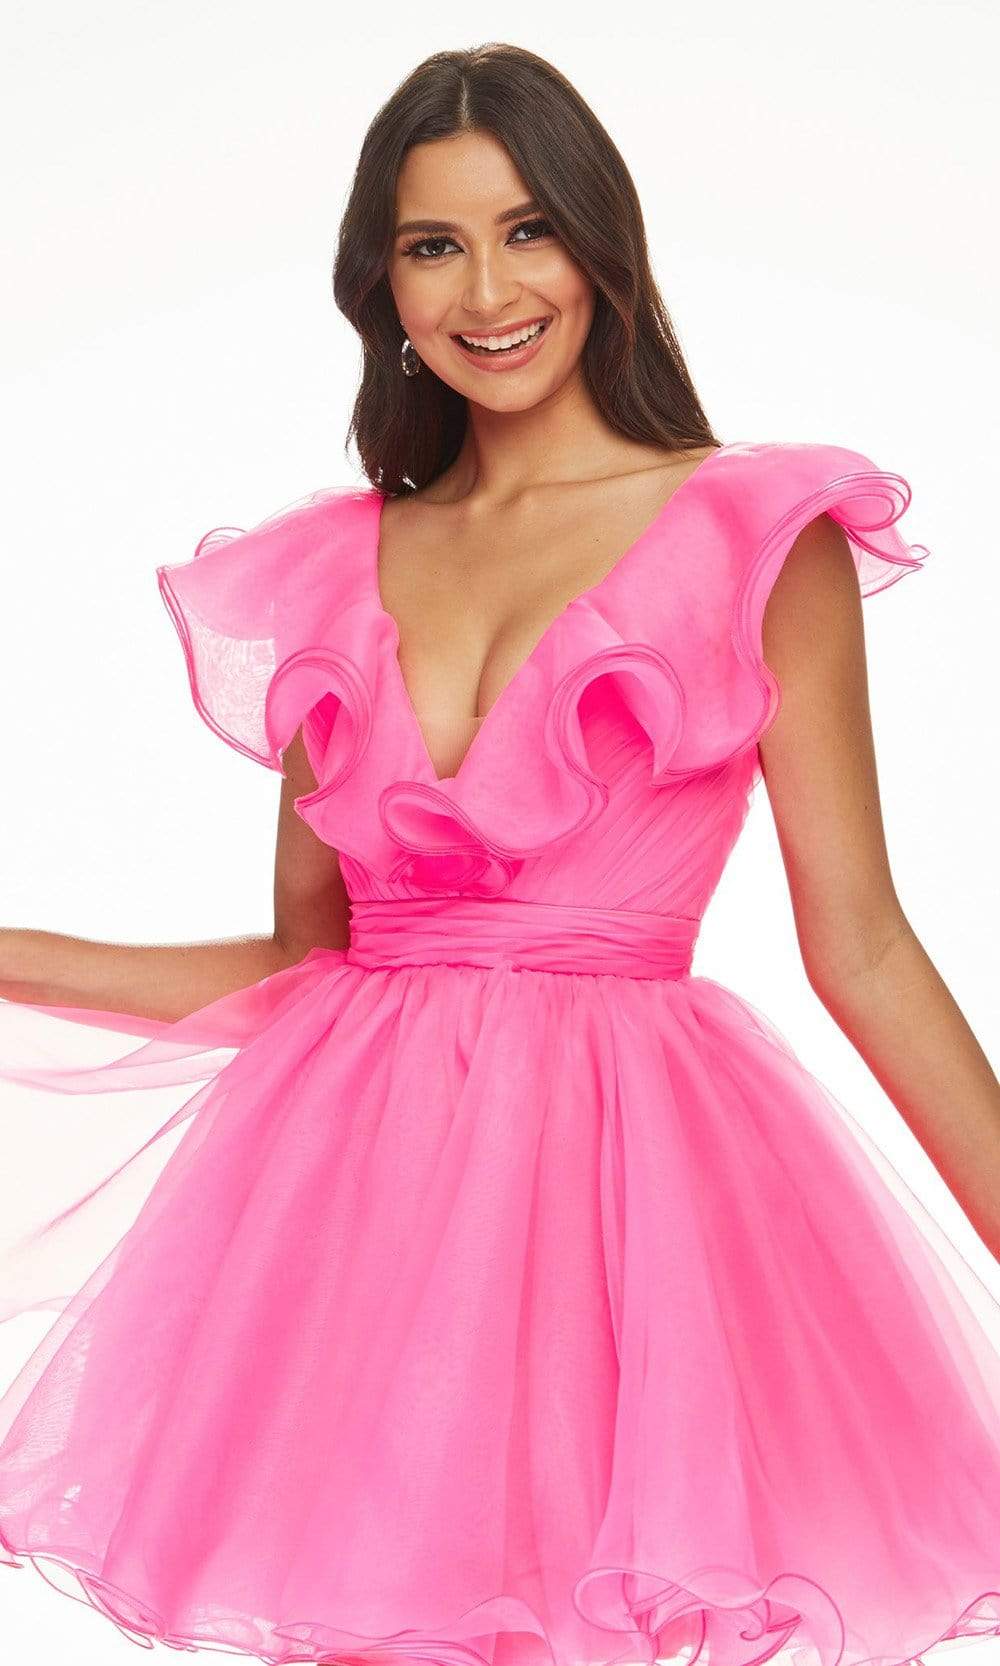 Ashley Lauren - 4464 Ruffled Plunging V-Neck Cocktail Dress Cocktail Dresses 0 / Hot Pink